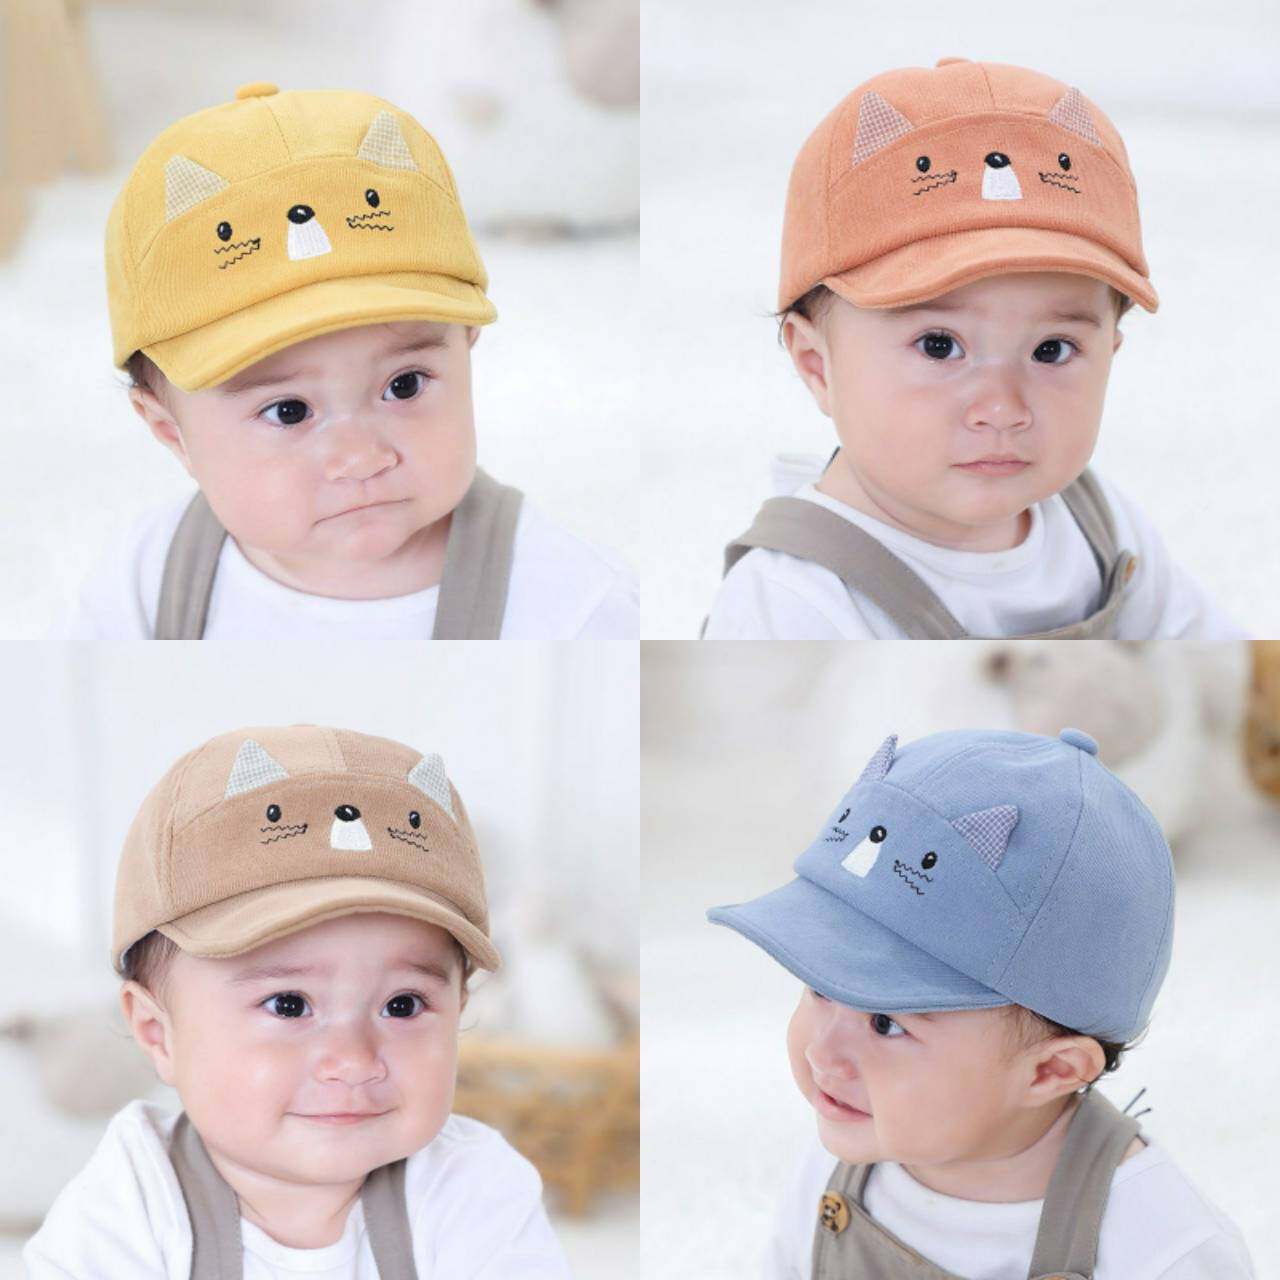 ☆พร้อมส่ง☆หมวกเด็ก หมวกแก็ปเด็ก 2เดือน - 18เดือน หมวกเด็กแรกเกิด หมวกเด็กผู้หญิง หมวกเด็กผู้ชาย หนูน้อยแต่งหูลายสก็อต รอบหัว:46-48 cm.